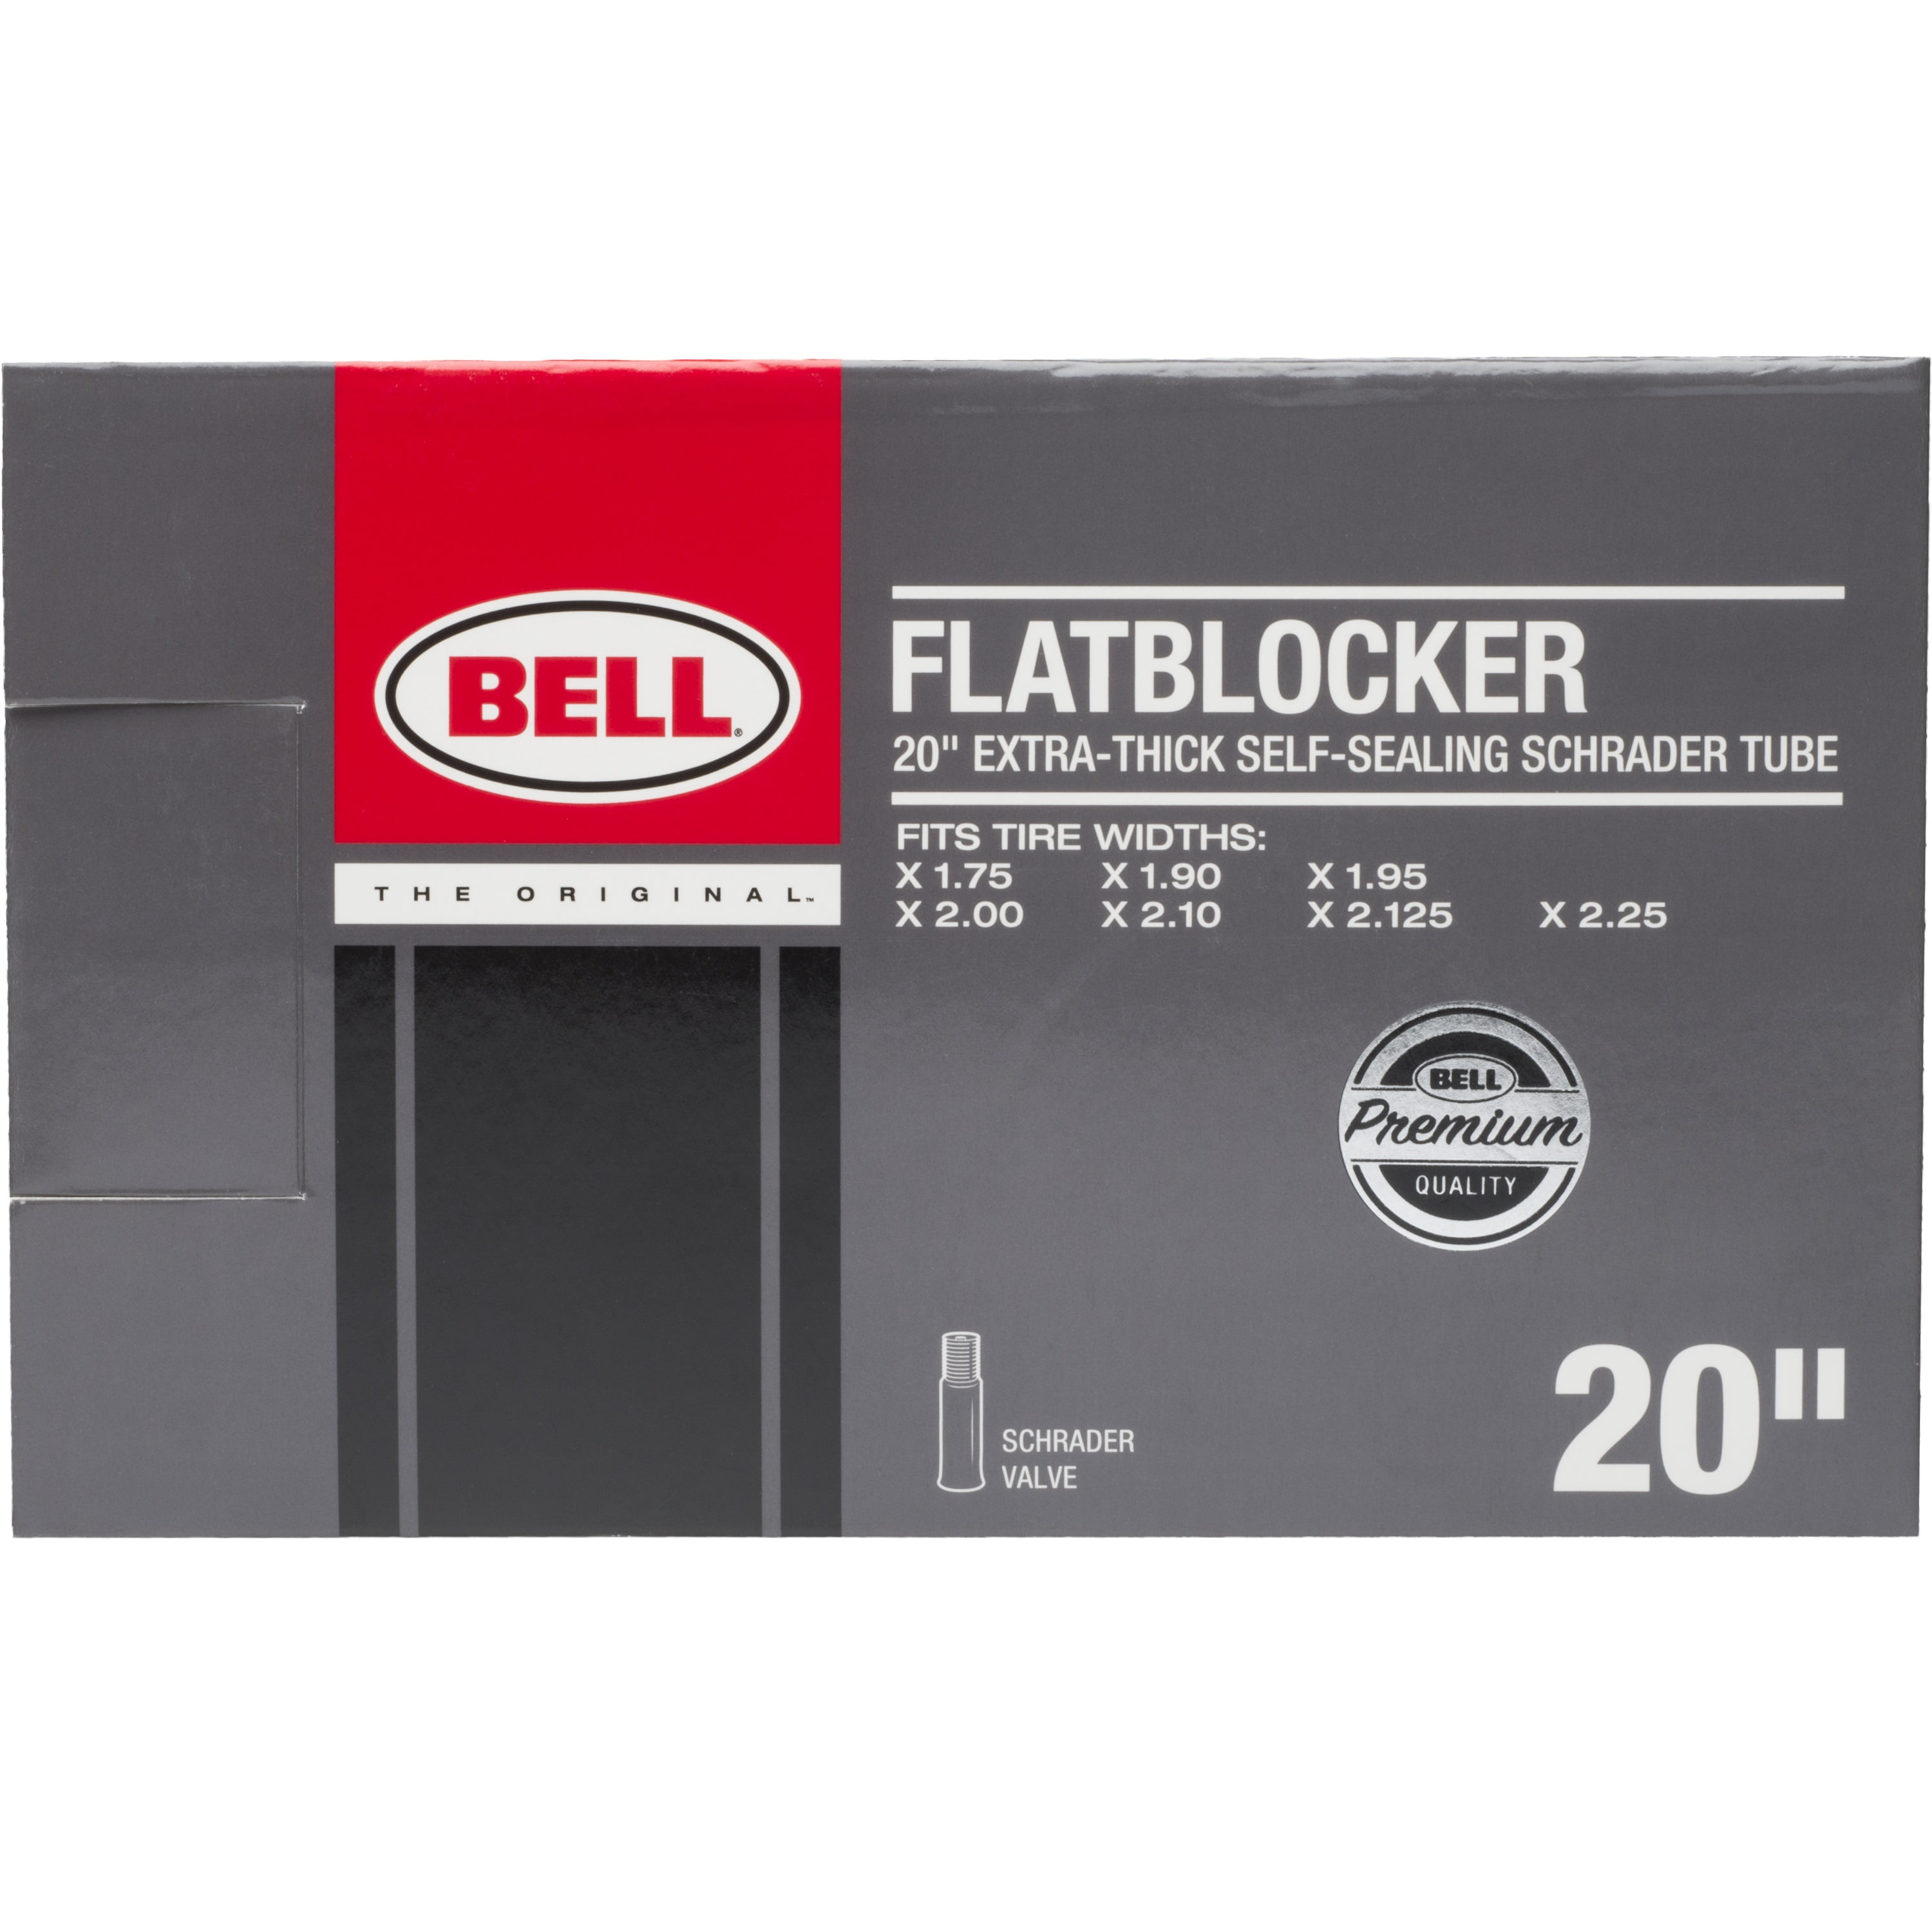 BELL Flatblocker 20" x 1.75-2.25 Self Seal Schrader Valve Bike Inner Tube 